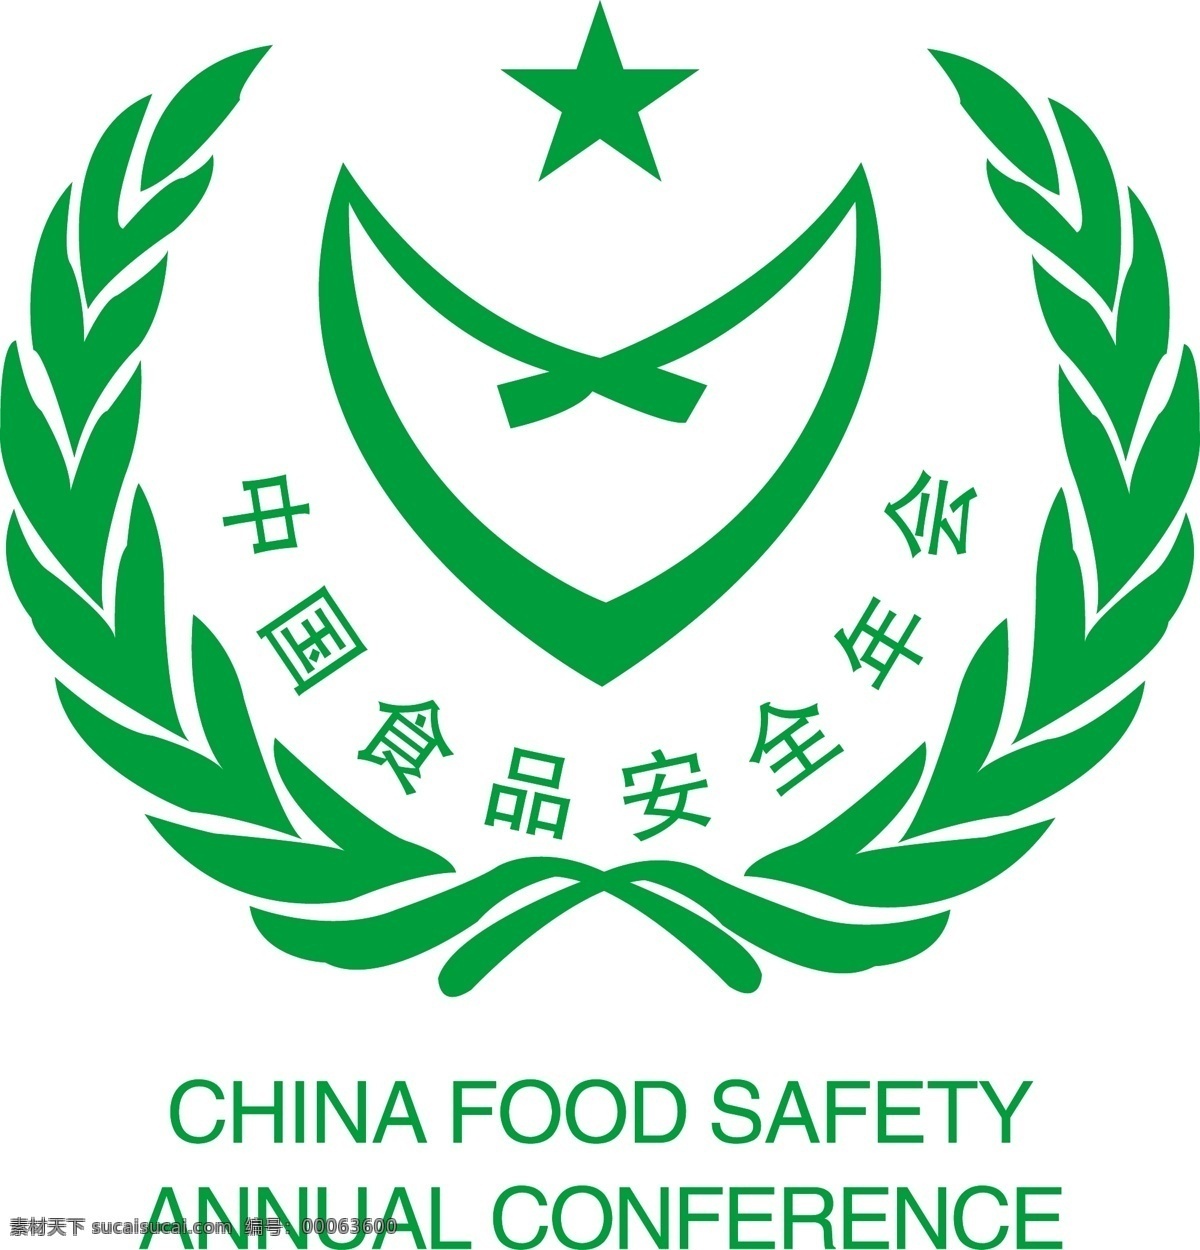 标志 茶叶 设计素材 食品安全 矢量文件 中国 示范 单位 矢量 模板下载 示范单位 矢量图